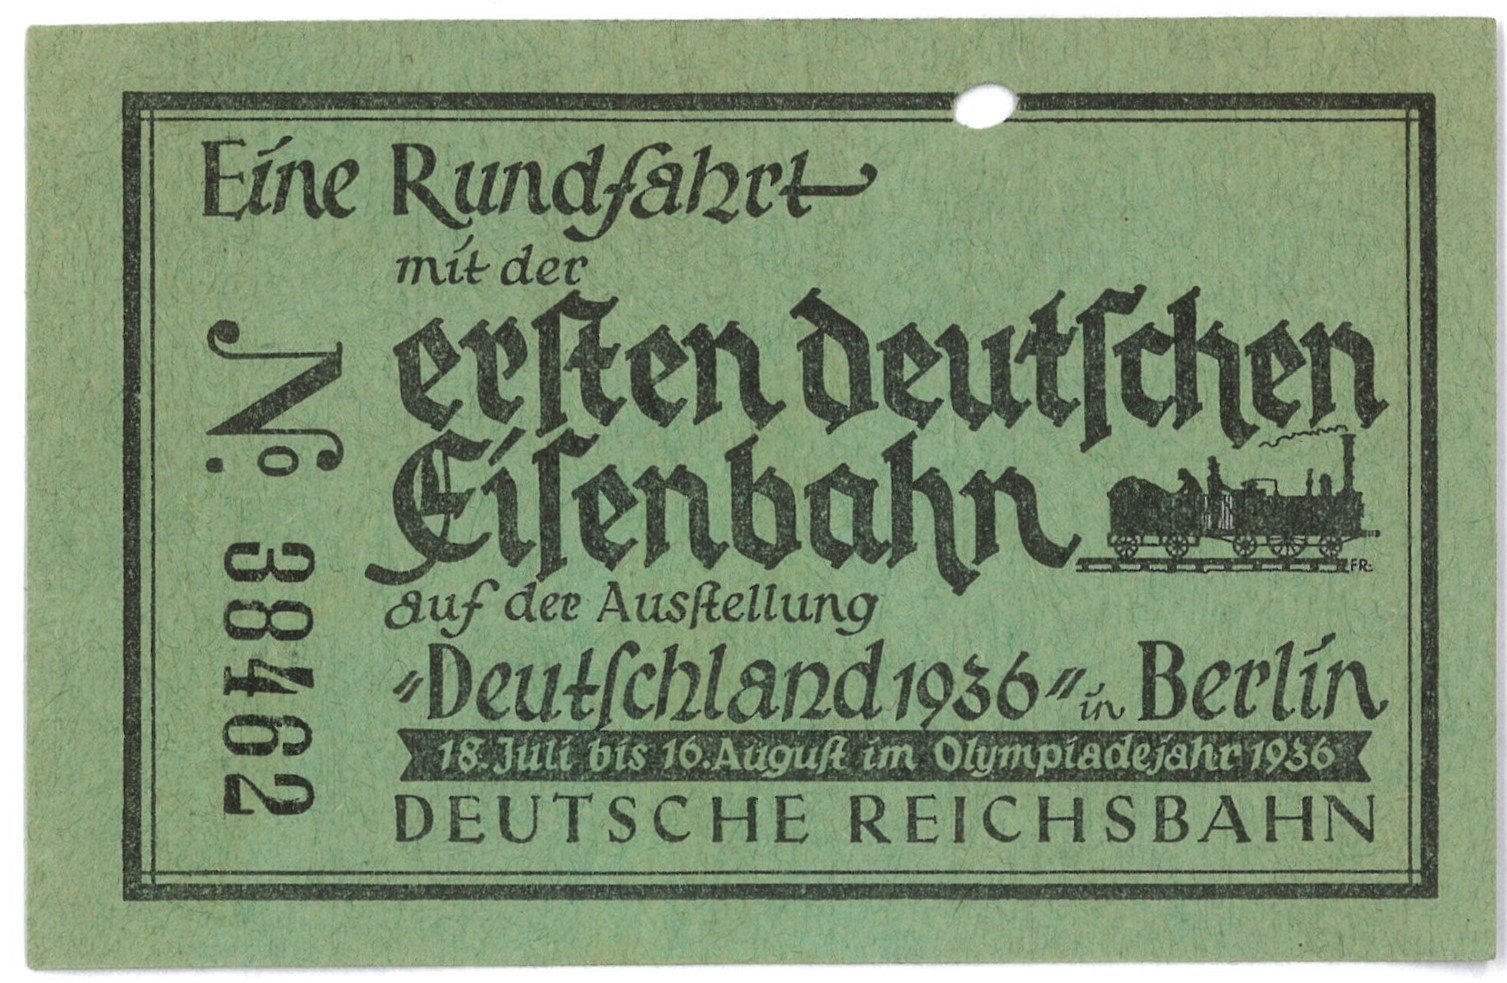 Berlin-Charlottenburg: Ausstellung Berlin 1936 "Deutschland", hier Rundfahrt mit der ersten deutschen Eisenbahn (Landesgeschichtliche Vereinigung für die Mark Brandenburg e.V., Archiv CC BY)